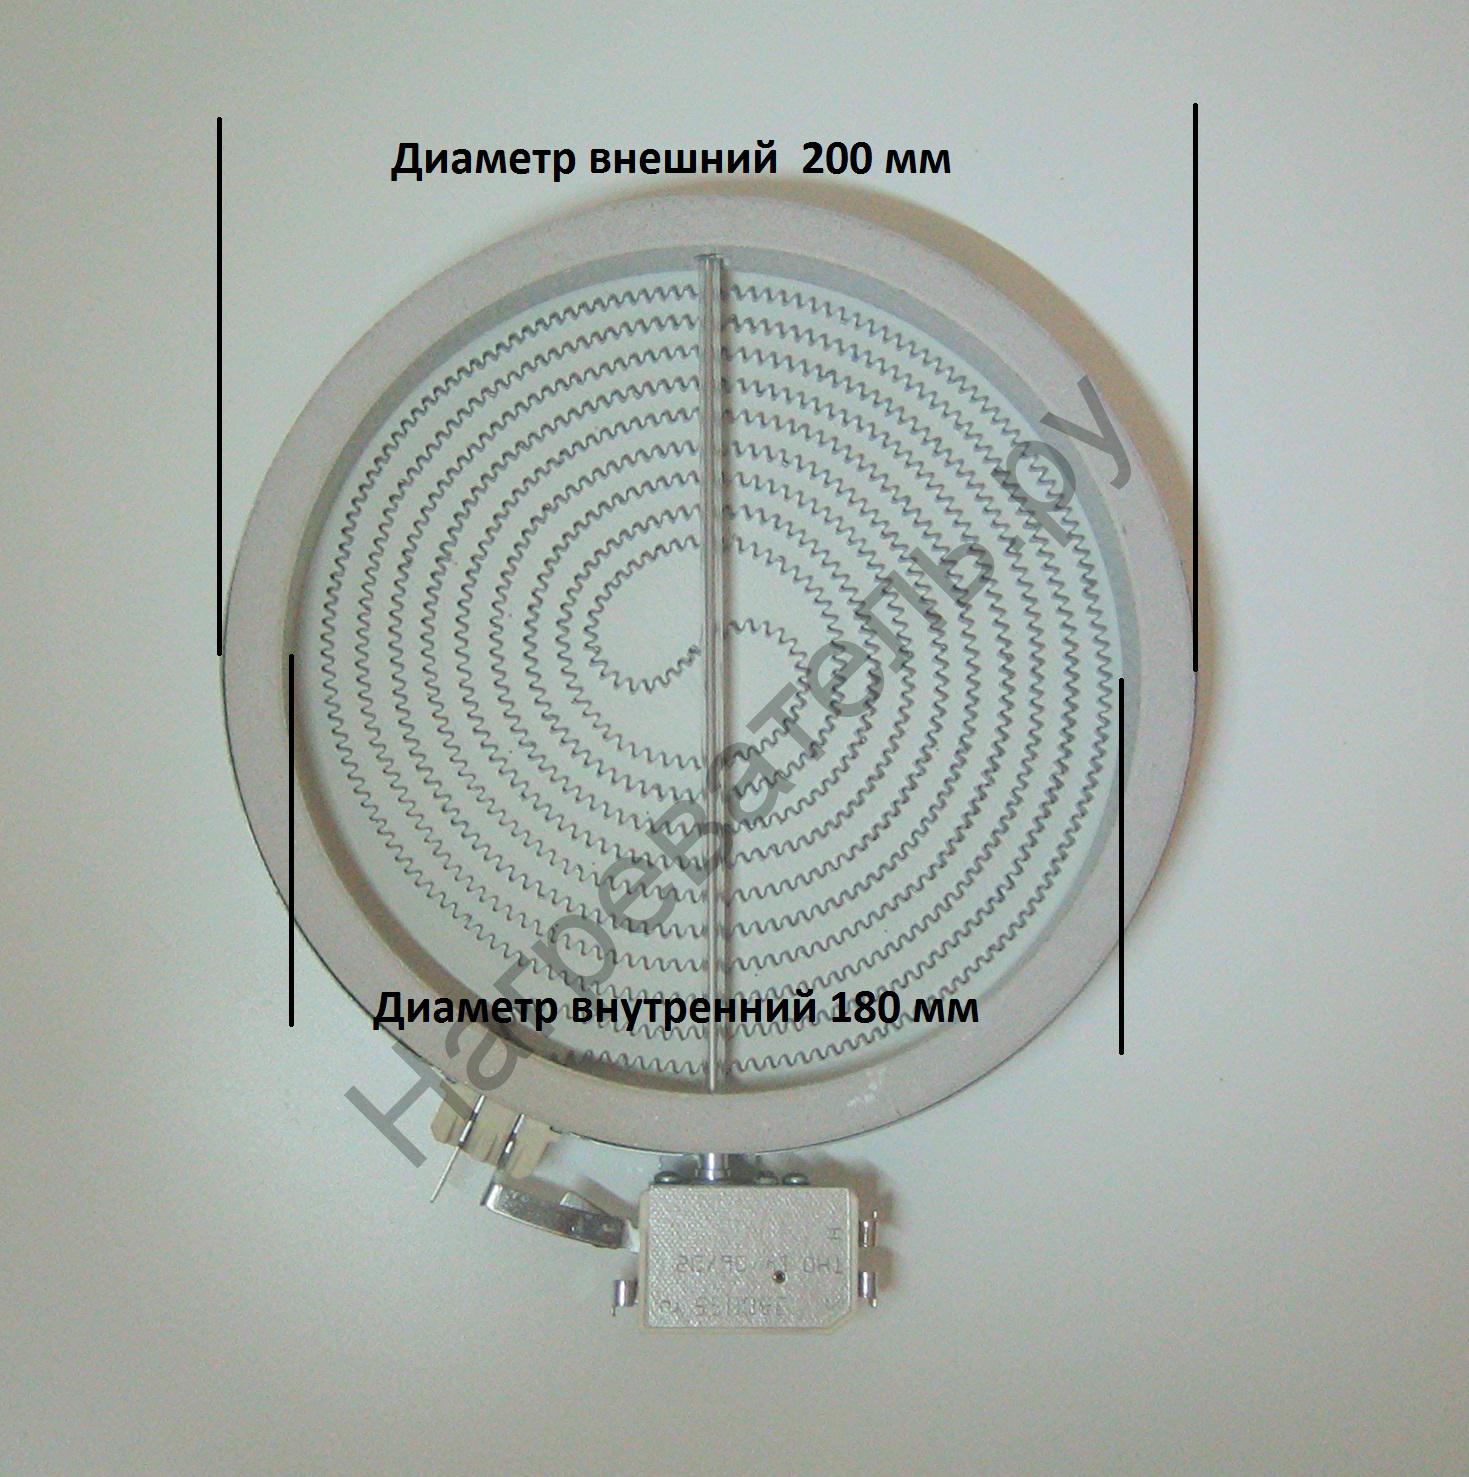 Конфорка стеклокерамическая  D200-180 мм  1,7kw